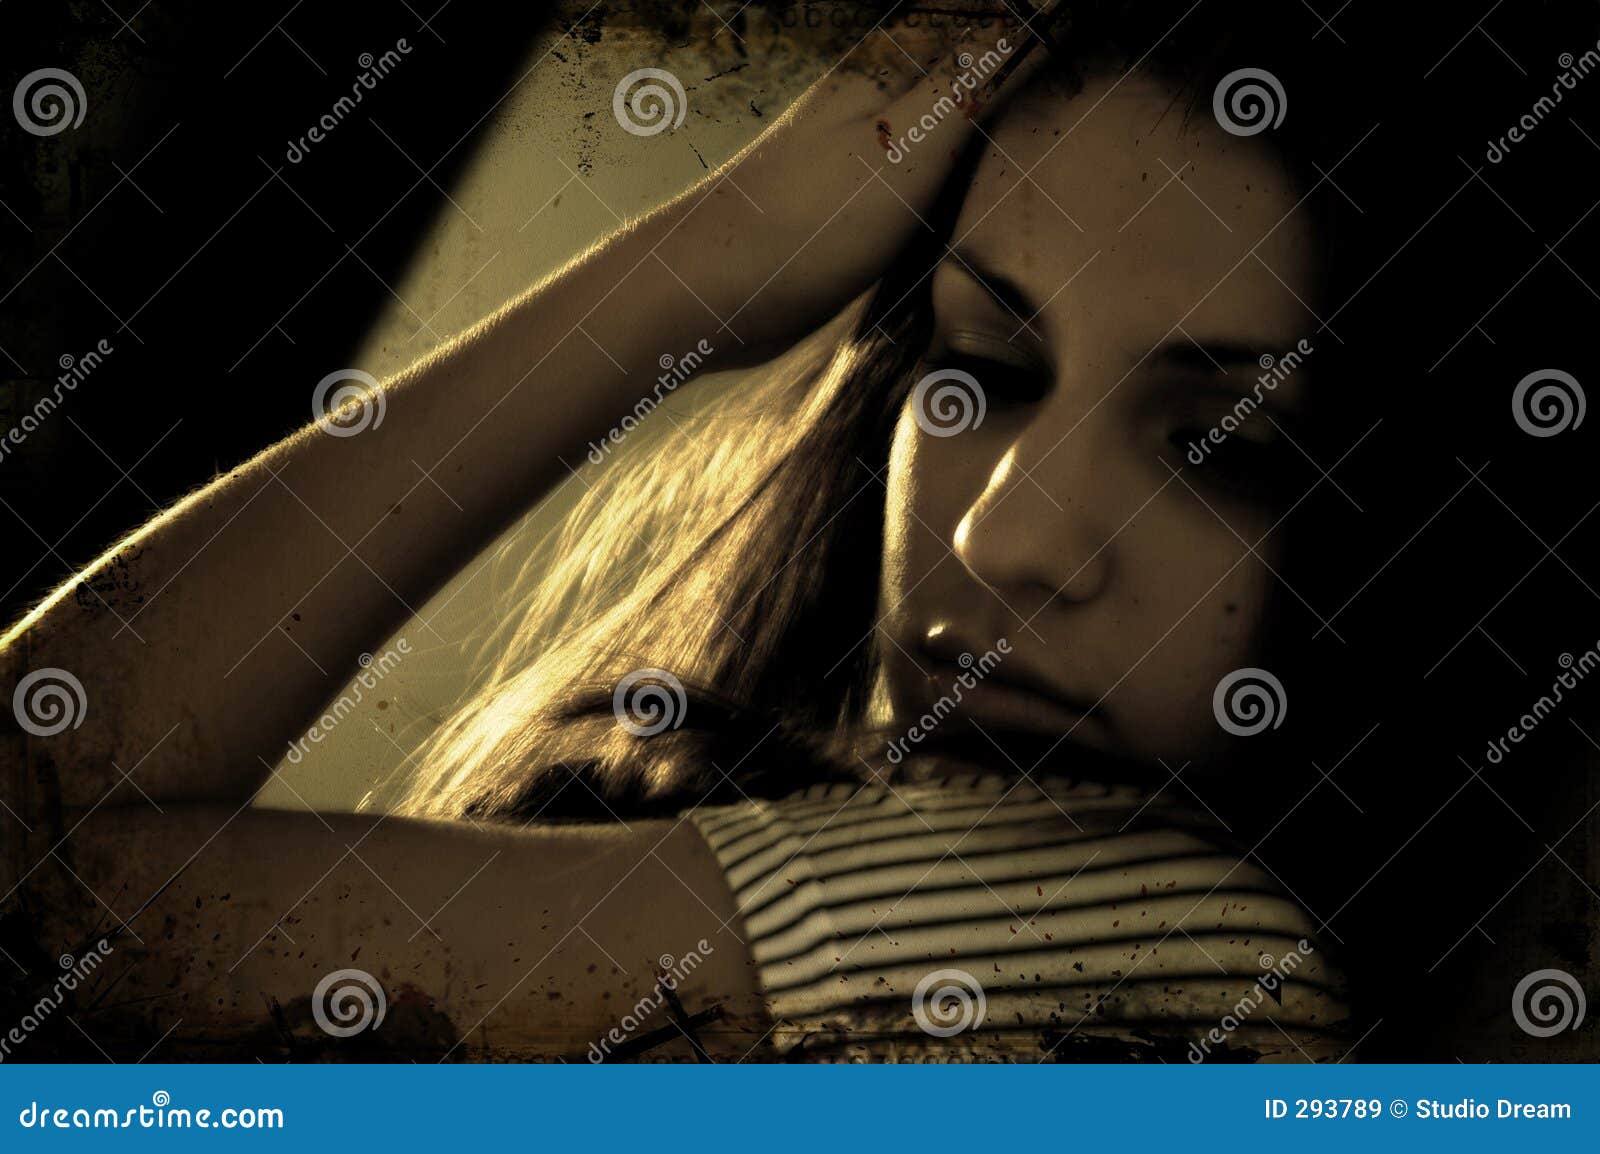 Brunette Daydreaming. Il giovane brunette Voluptuous daydreams in una stanza scura, protetta da un indicatore luminoso molle e caldo